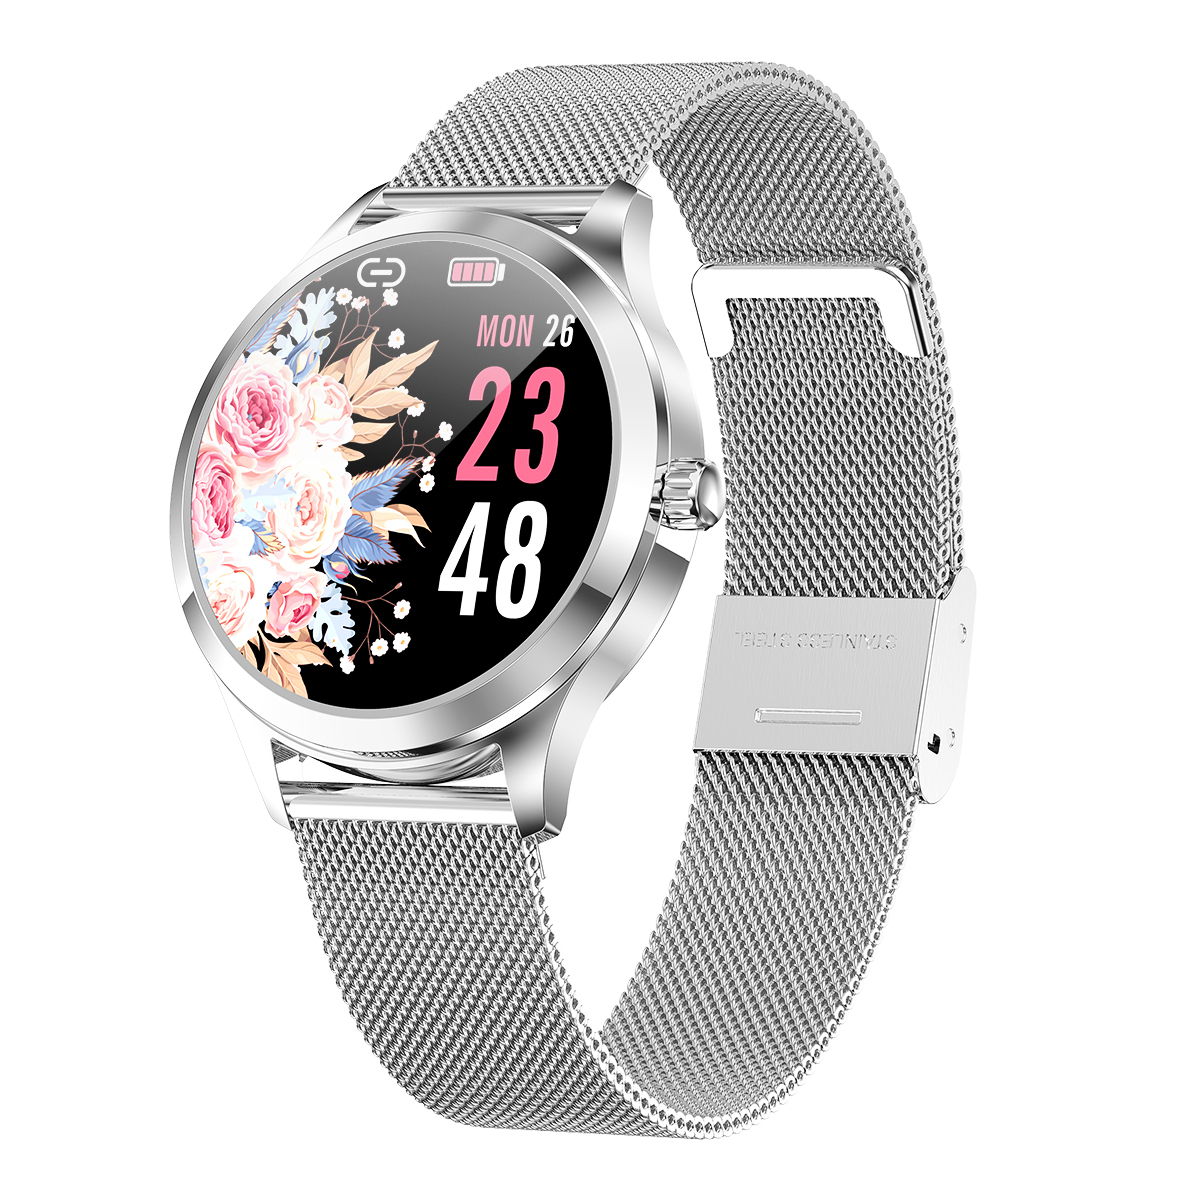 Купить смарт-часы Tiroki SM07  часы фитнес браслет, женские .